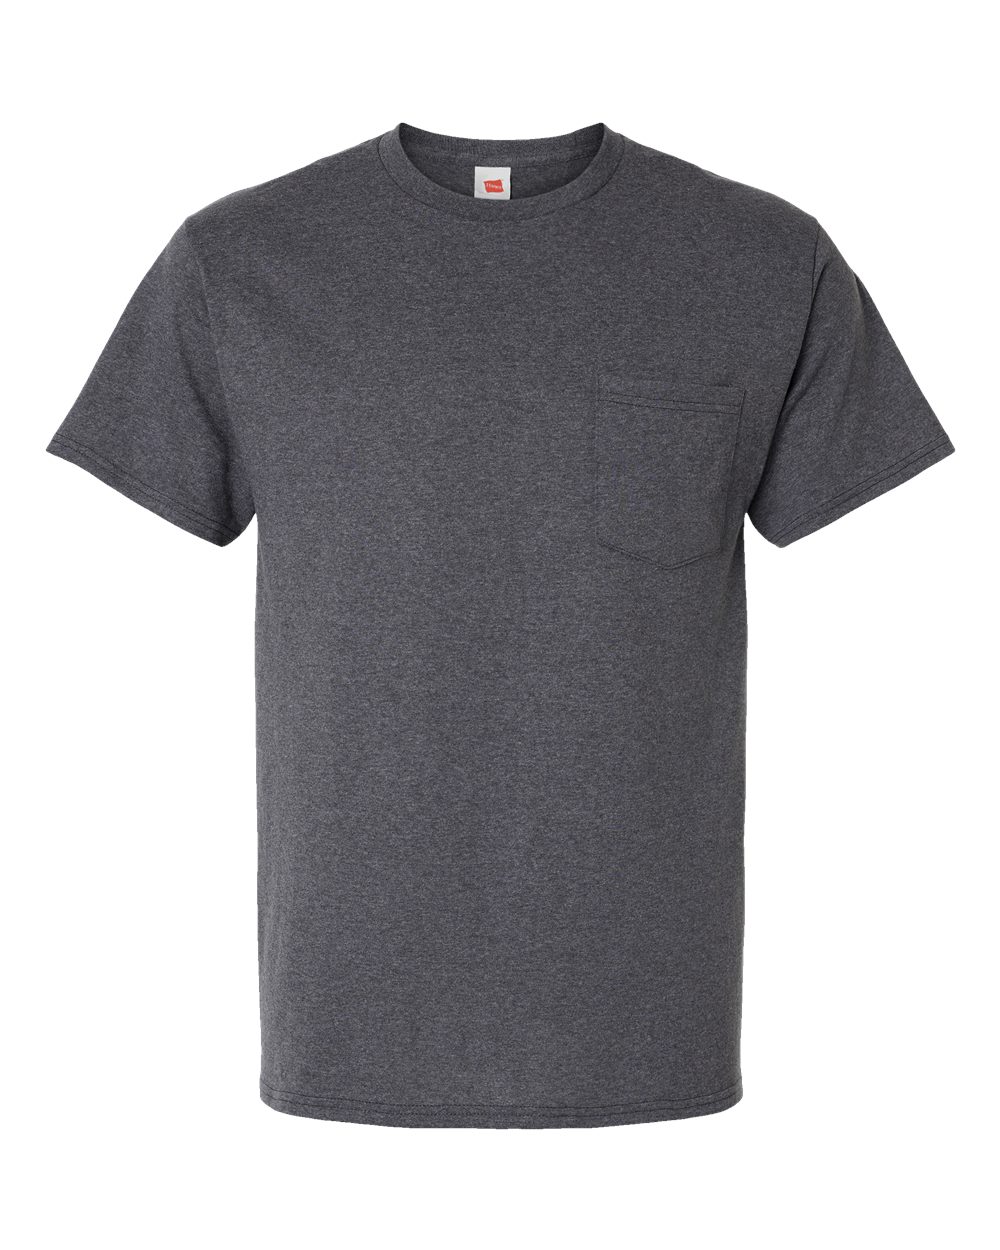 Hanes 5290P - Essential-T Pocket T-Shirt